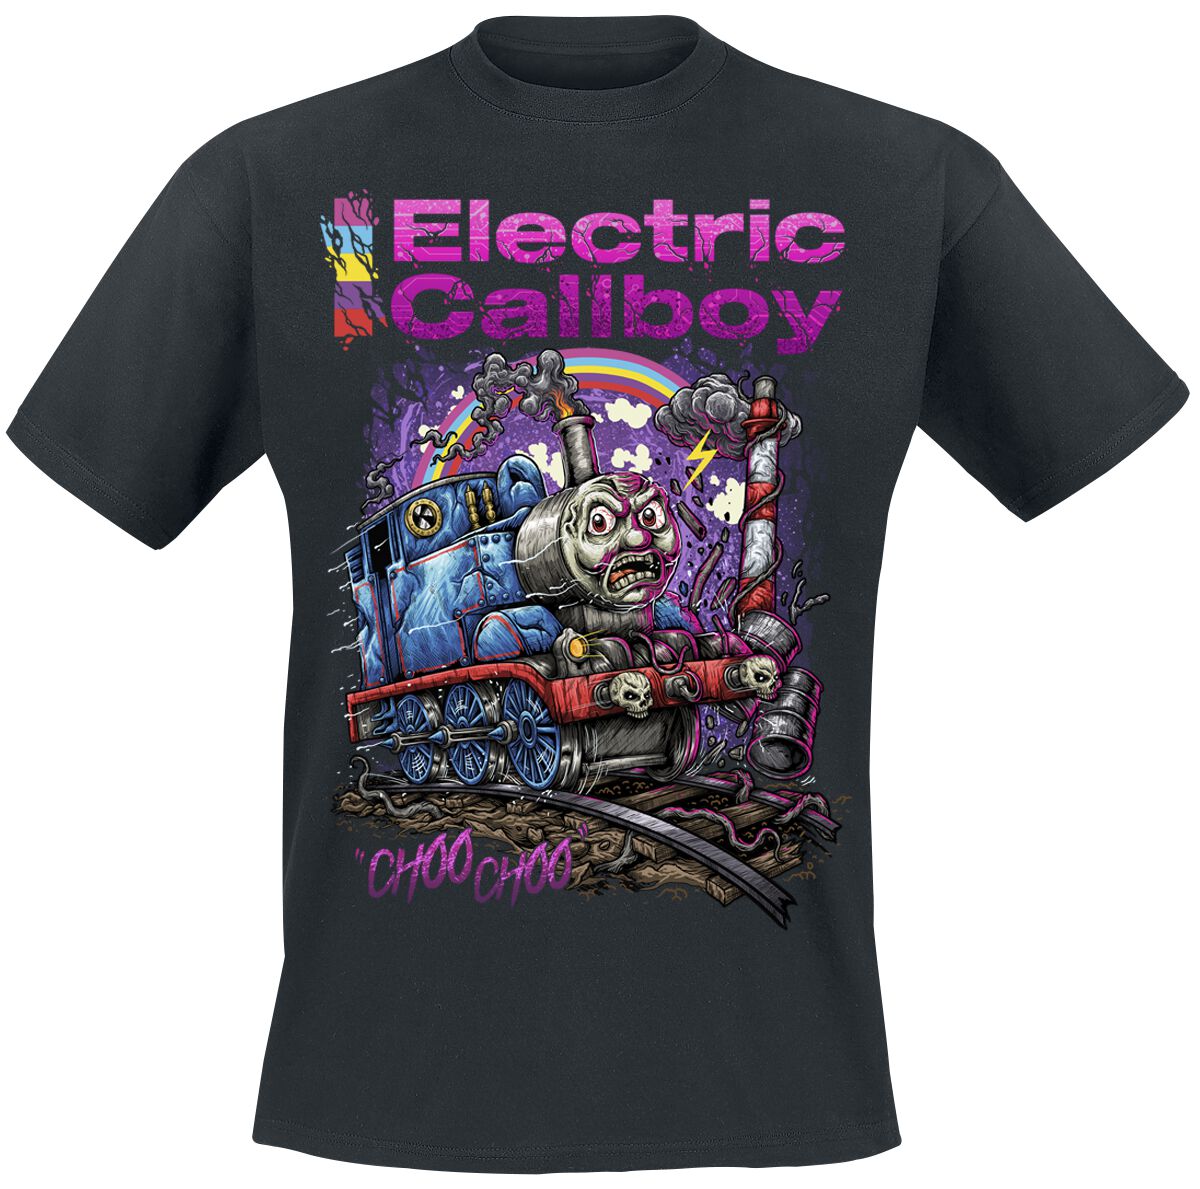 Electric Callboy T-Shirt - Choo Choo - S bis 3XL - für Männer - Größe S - schwarz  - Lizenziertes Merchandise!